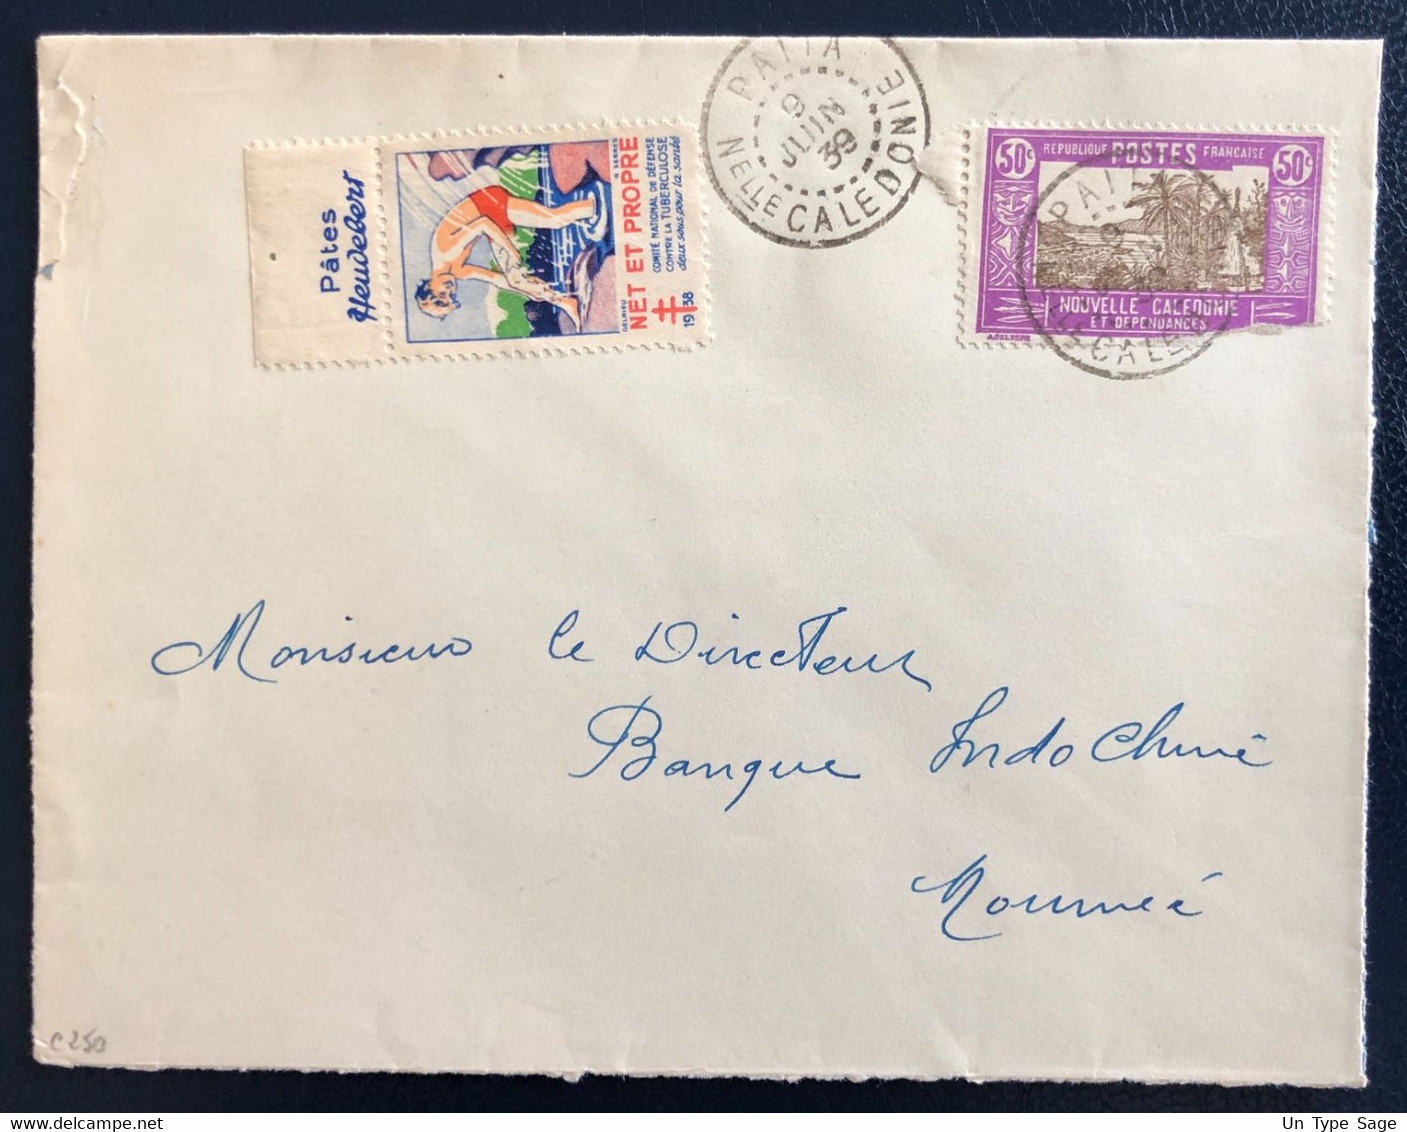 Nouvelle Calédonie Divers Sur Enveloppe TAD PAITA 9.6.1939 + Vignette - (B4620) - Briefe U. Dokumente